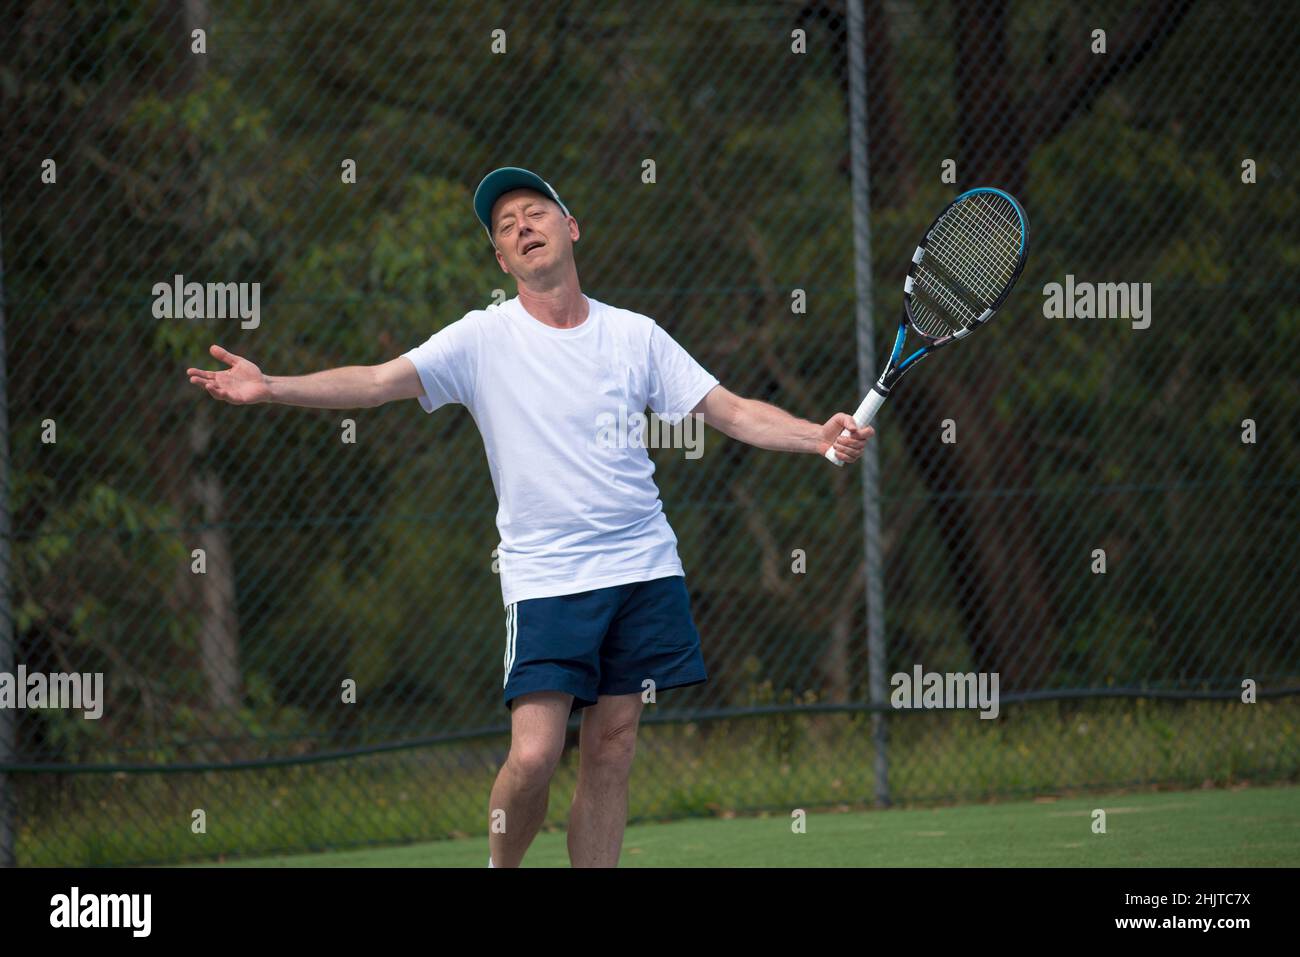 Ein Australier in den Fünfzigern oder Sechzigern steht auf einem örtlichen Tennisplatz, bewaffnet, und appelliert nach einer Entscheidung gegen ihn an den Schiedsrichter (Kamera) Stockfoto